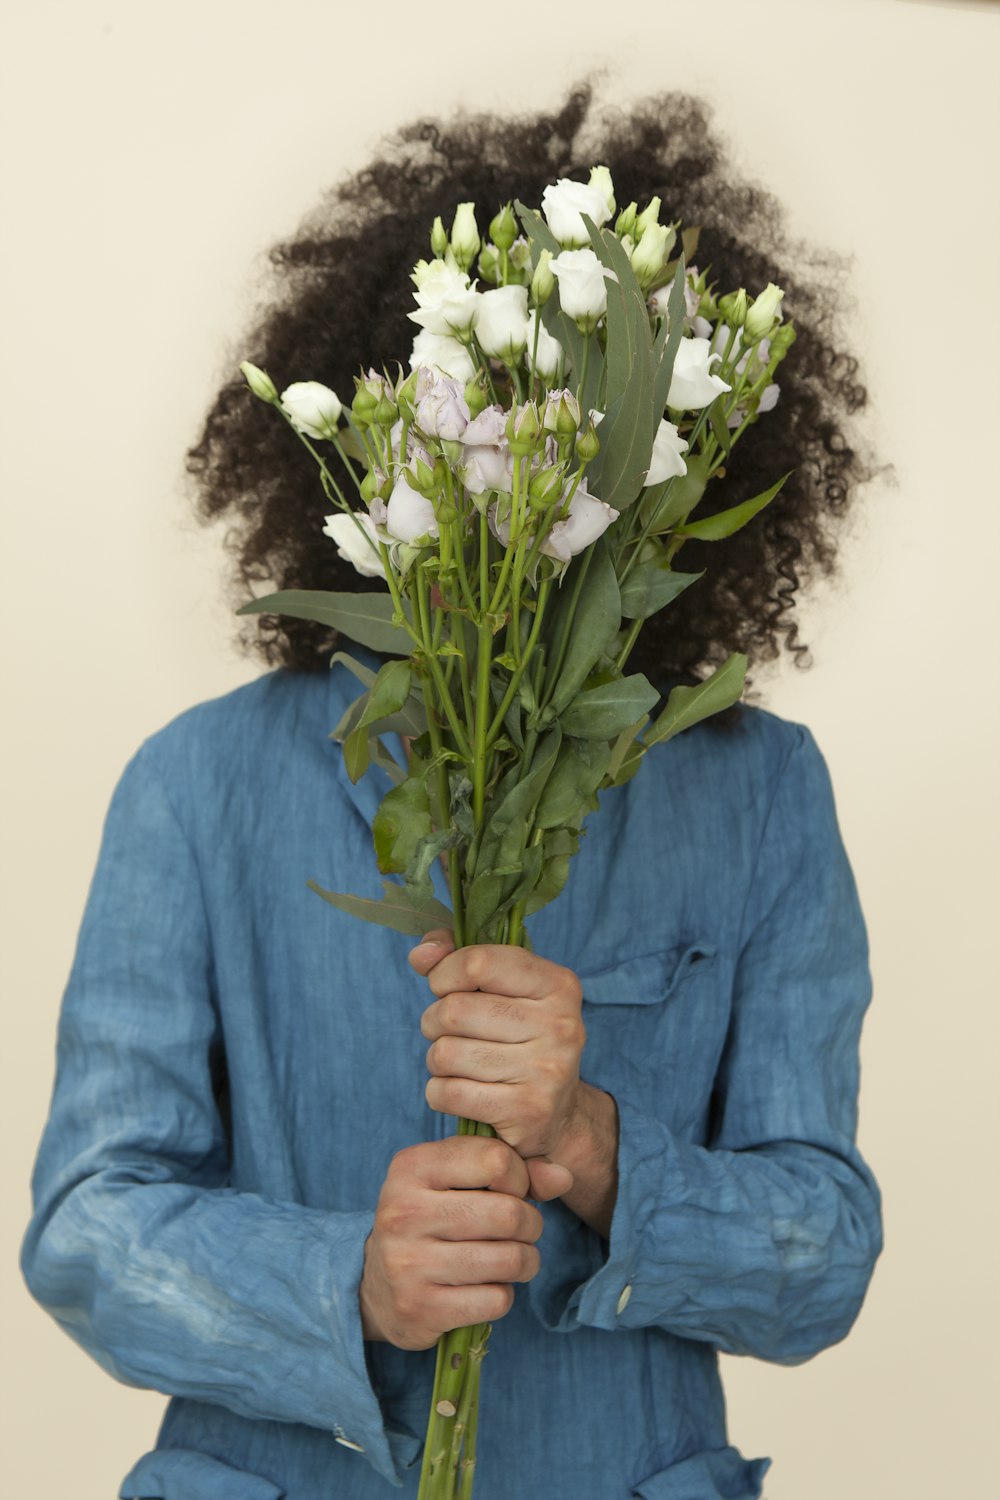 fotografía de enfoque selectivo de persona sosteniendo ramo de flores de tulipán blanco